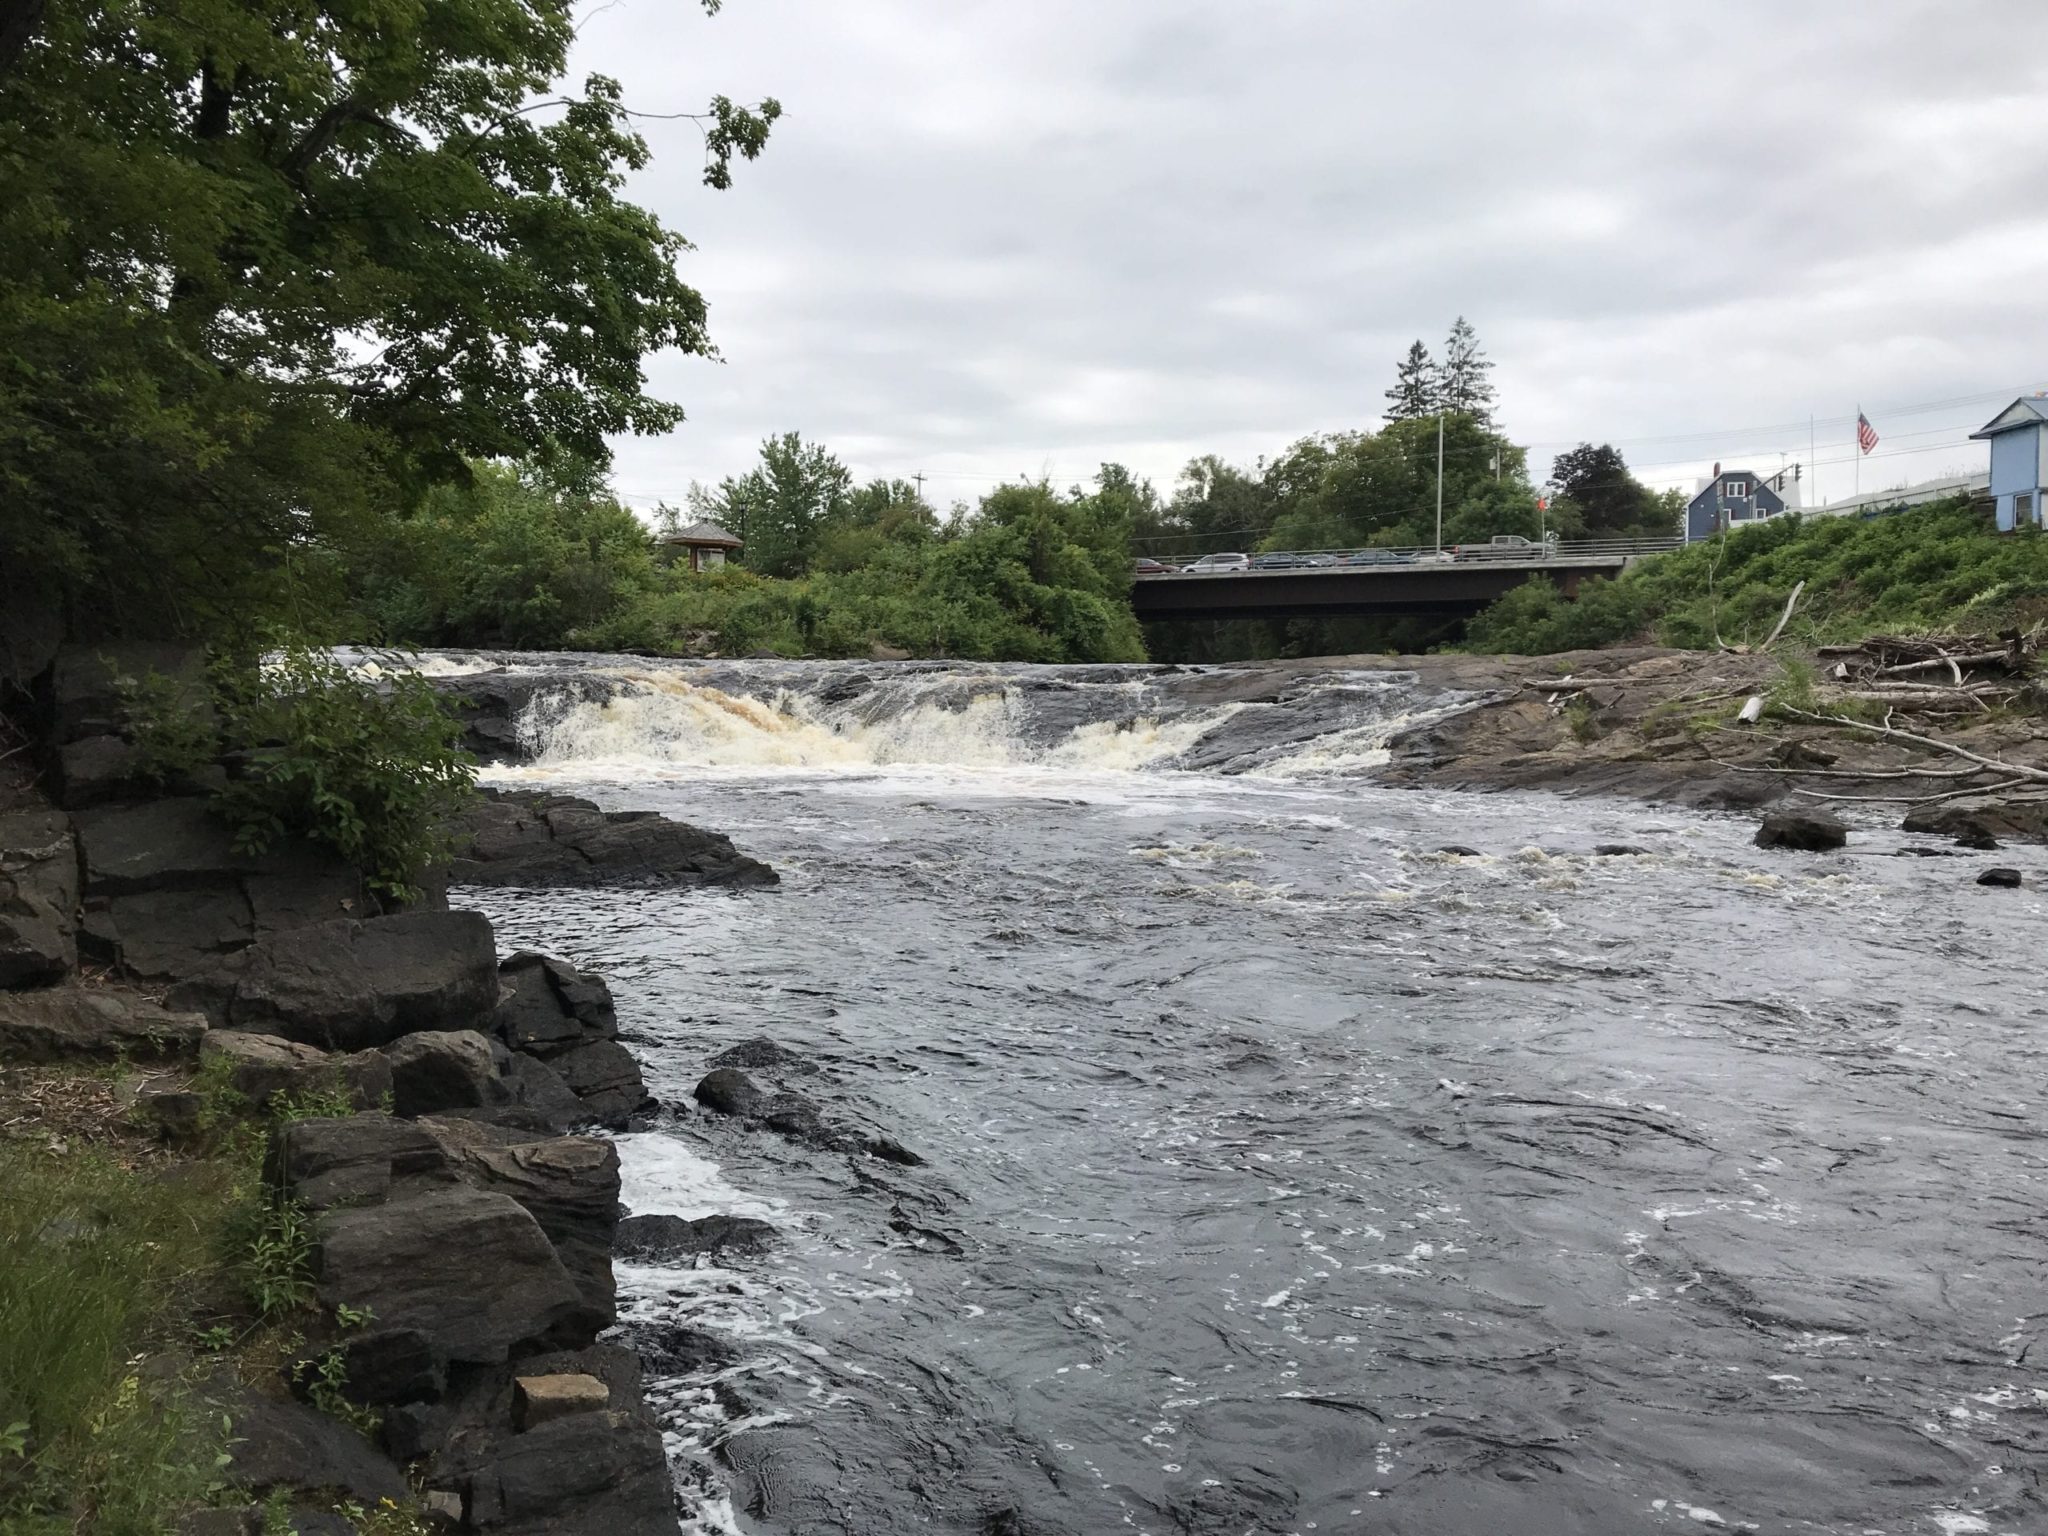 Cascade Falls #2 – Ithaca, Tompkins